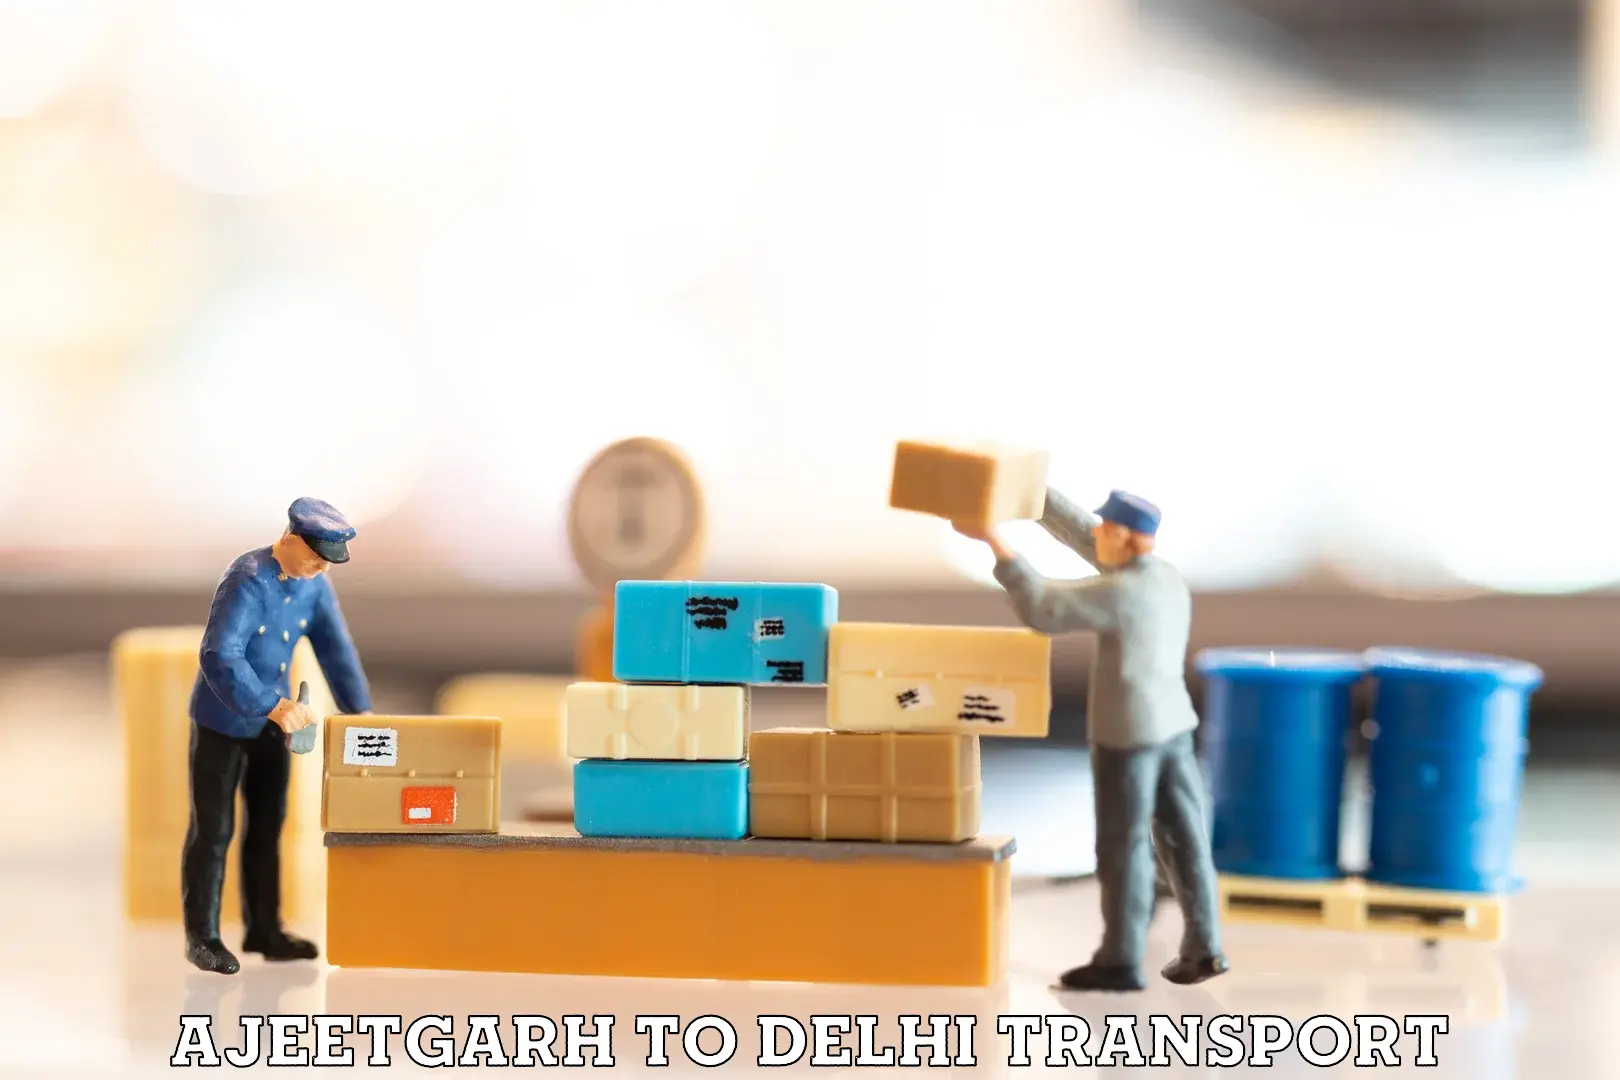 Air cargo transport services Ajeetgarh to Delhi